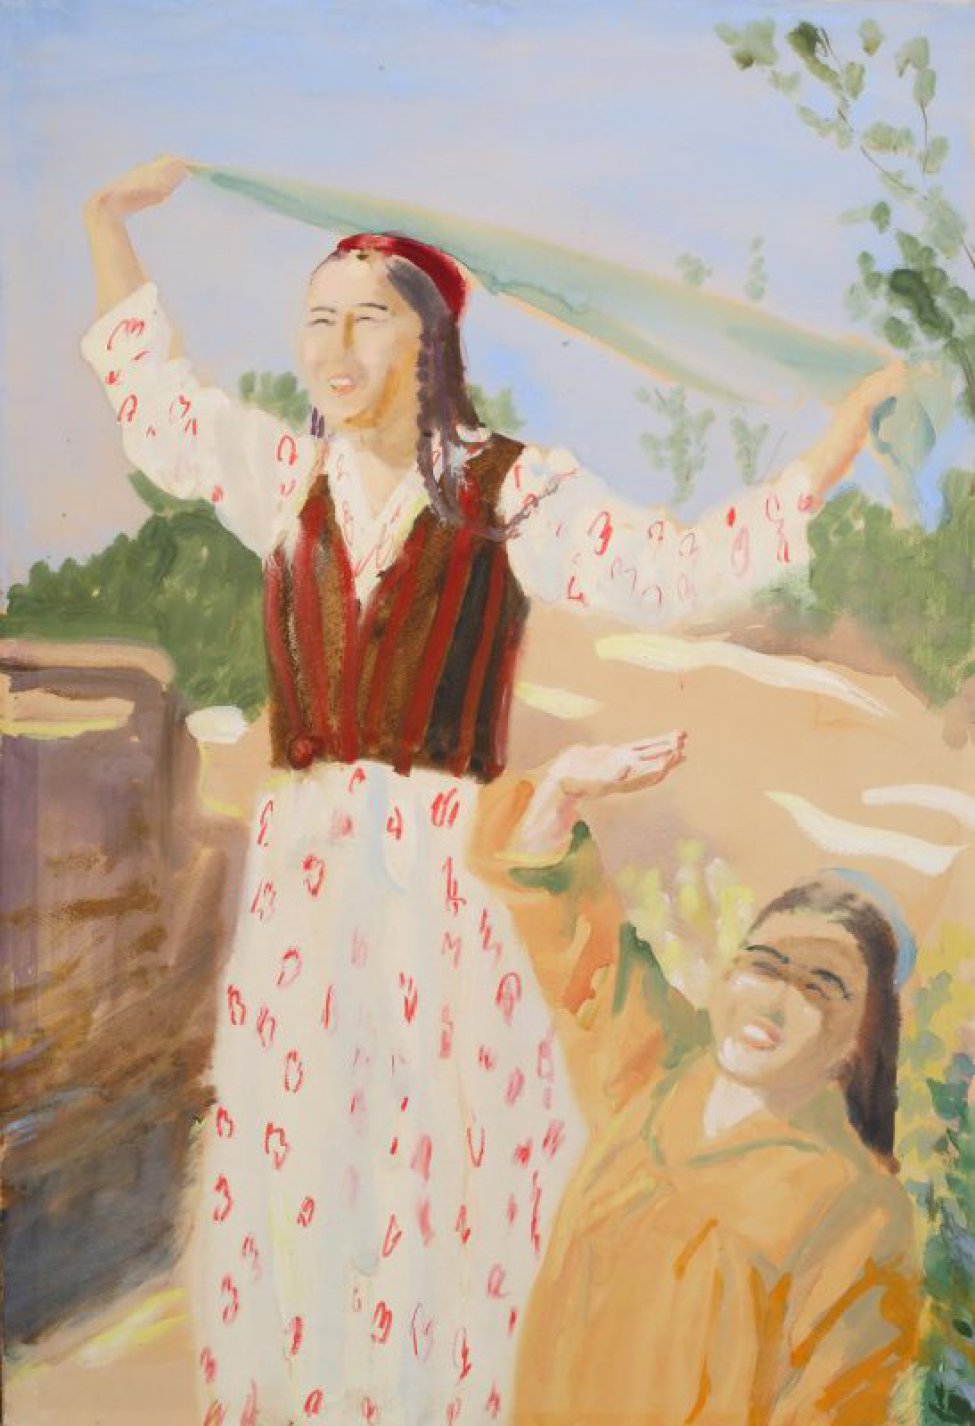 Изображены две молодые узбечки: одна в рост в светлом цветном платье и полосатой жилетке, в ее поднятых к верху руках зеленая косынка; фигура второй
женщины срезана погрудно нижним краем листа.